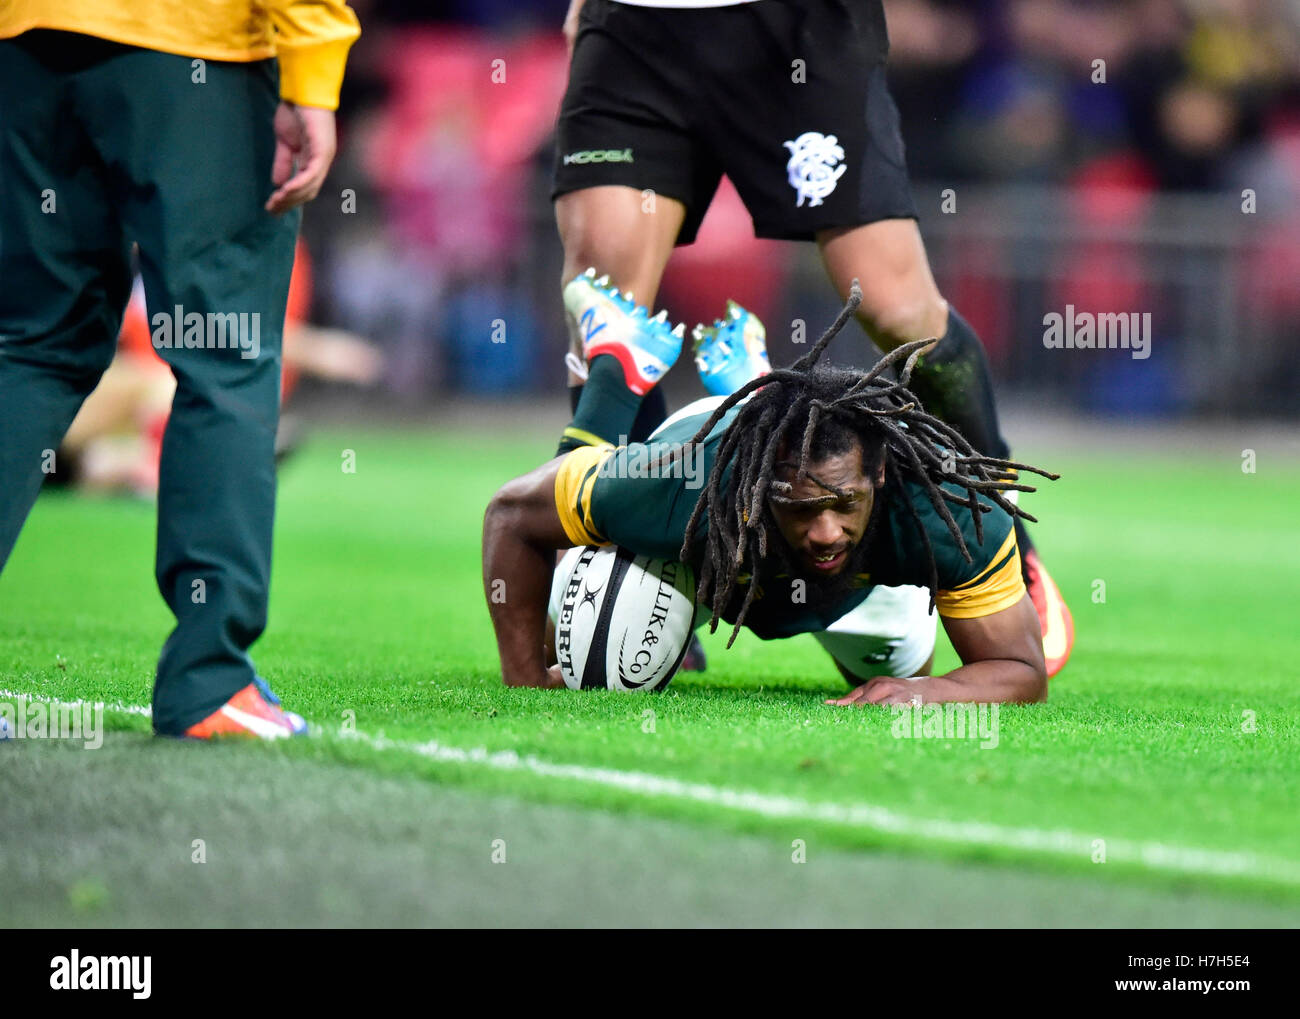 Londra, Inghilterra - 5 Novembre, 2016: Sergeal Perterson (ZAF) punteggi a provare durante la partita di rugby tra i barbari vs Sud Africa allo Stadio di Wembley. Credito: Taka Wu/Alamy Live News Foto Stock